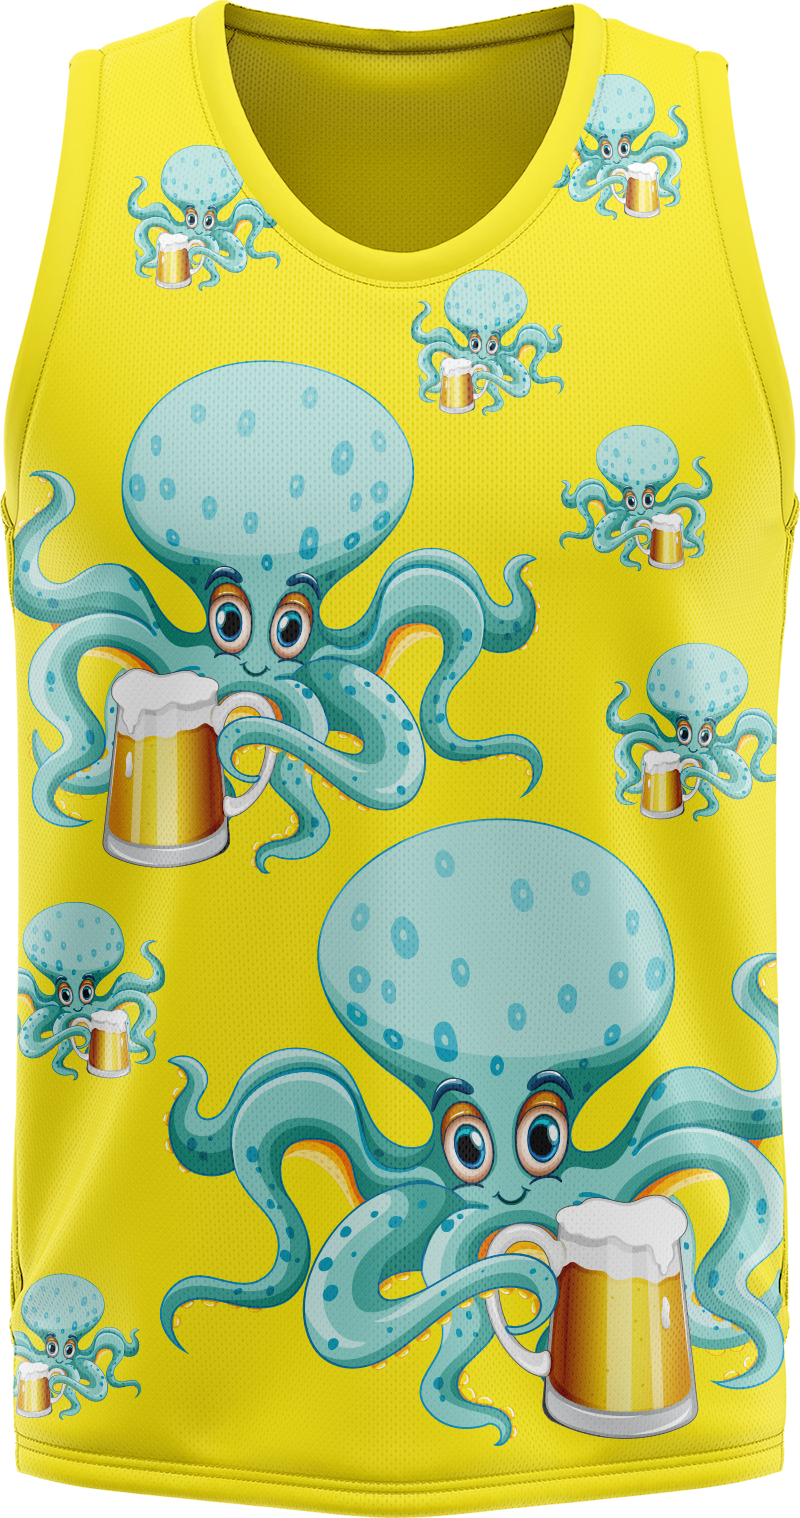 Octopus Basketball Jersey